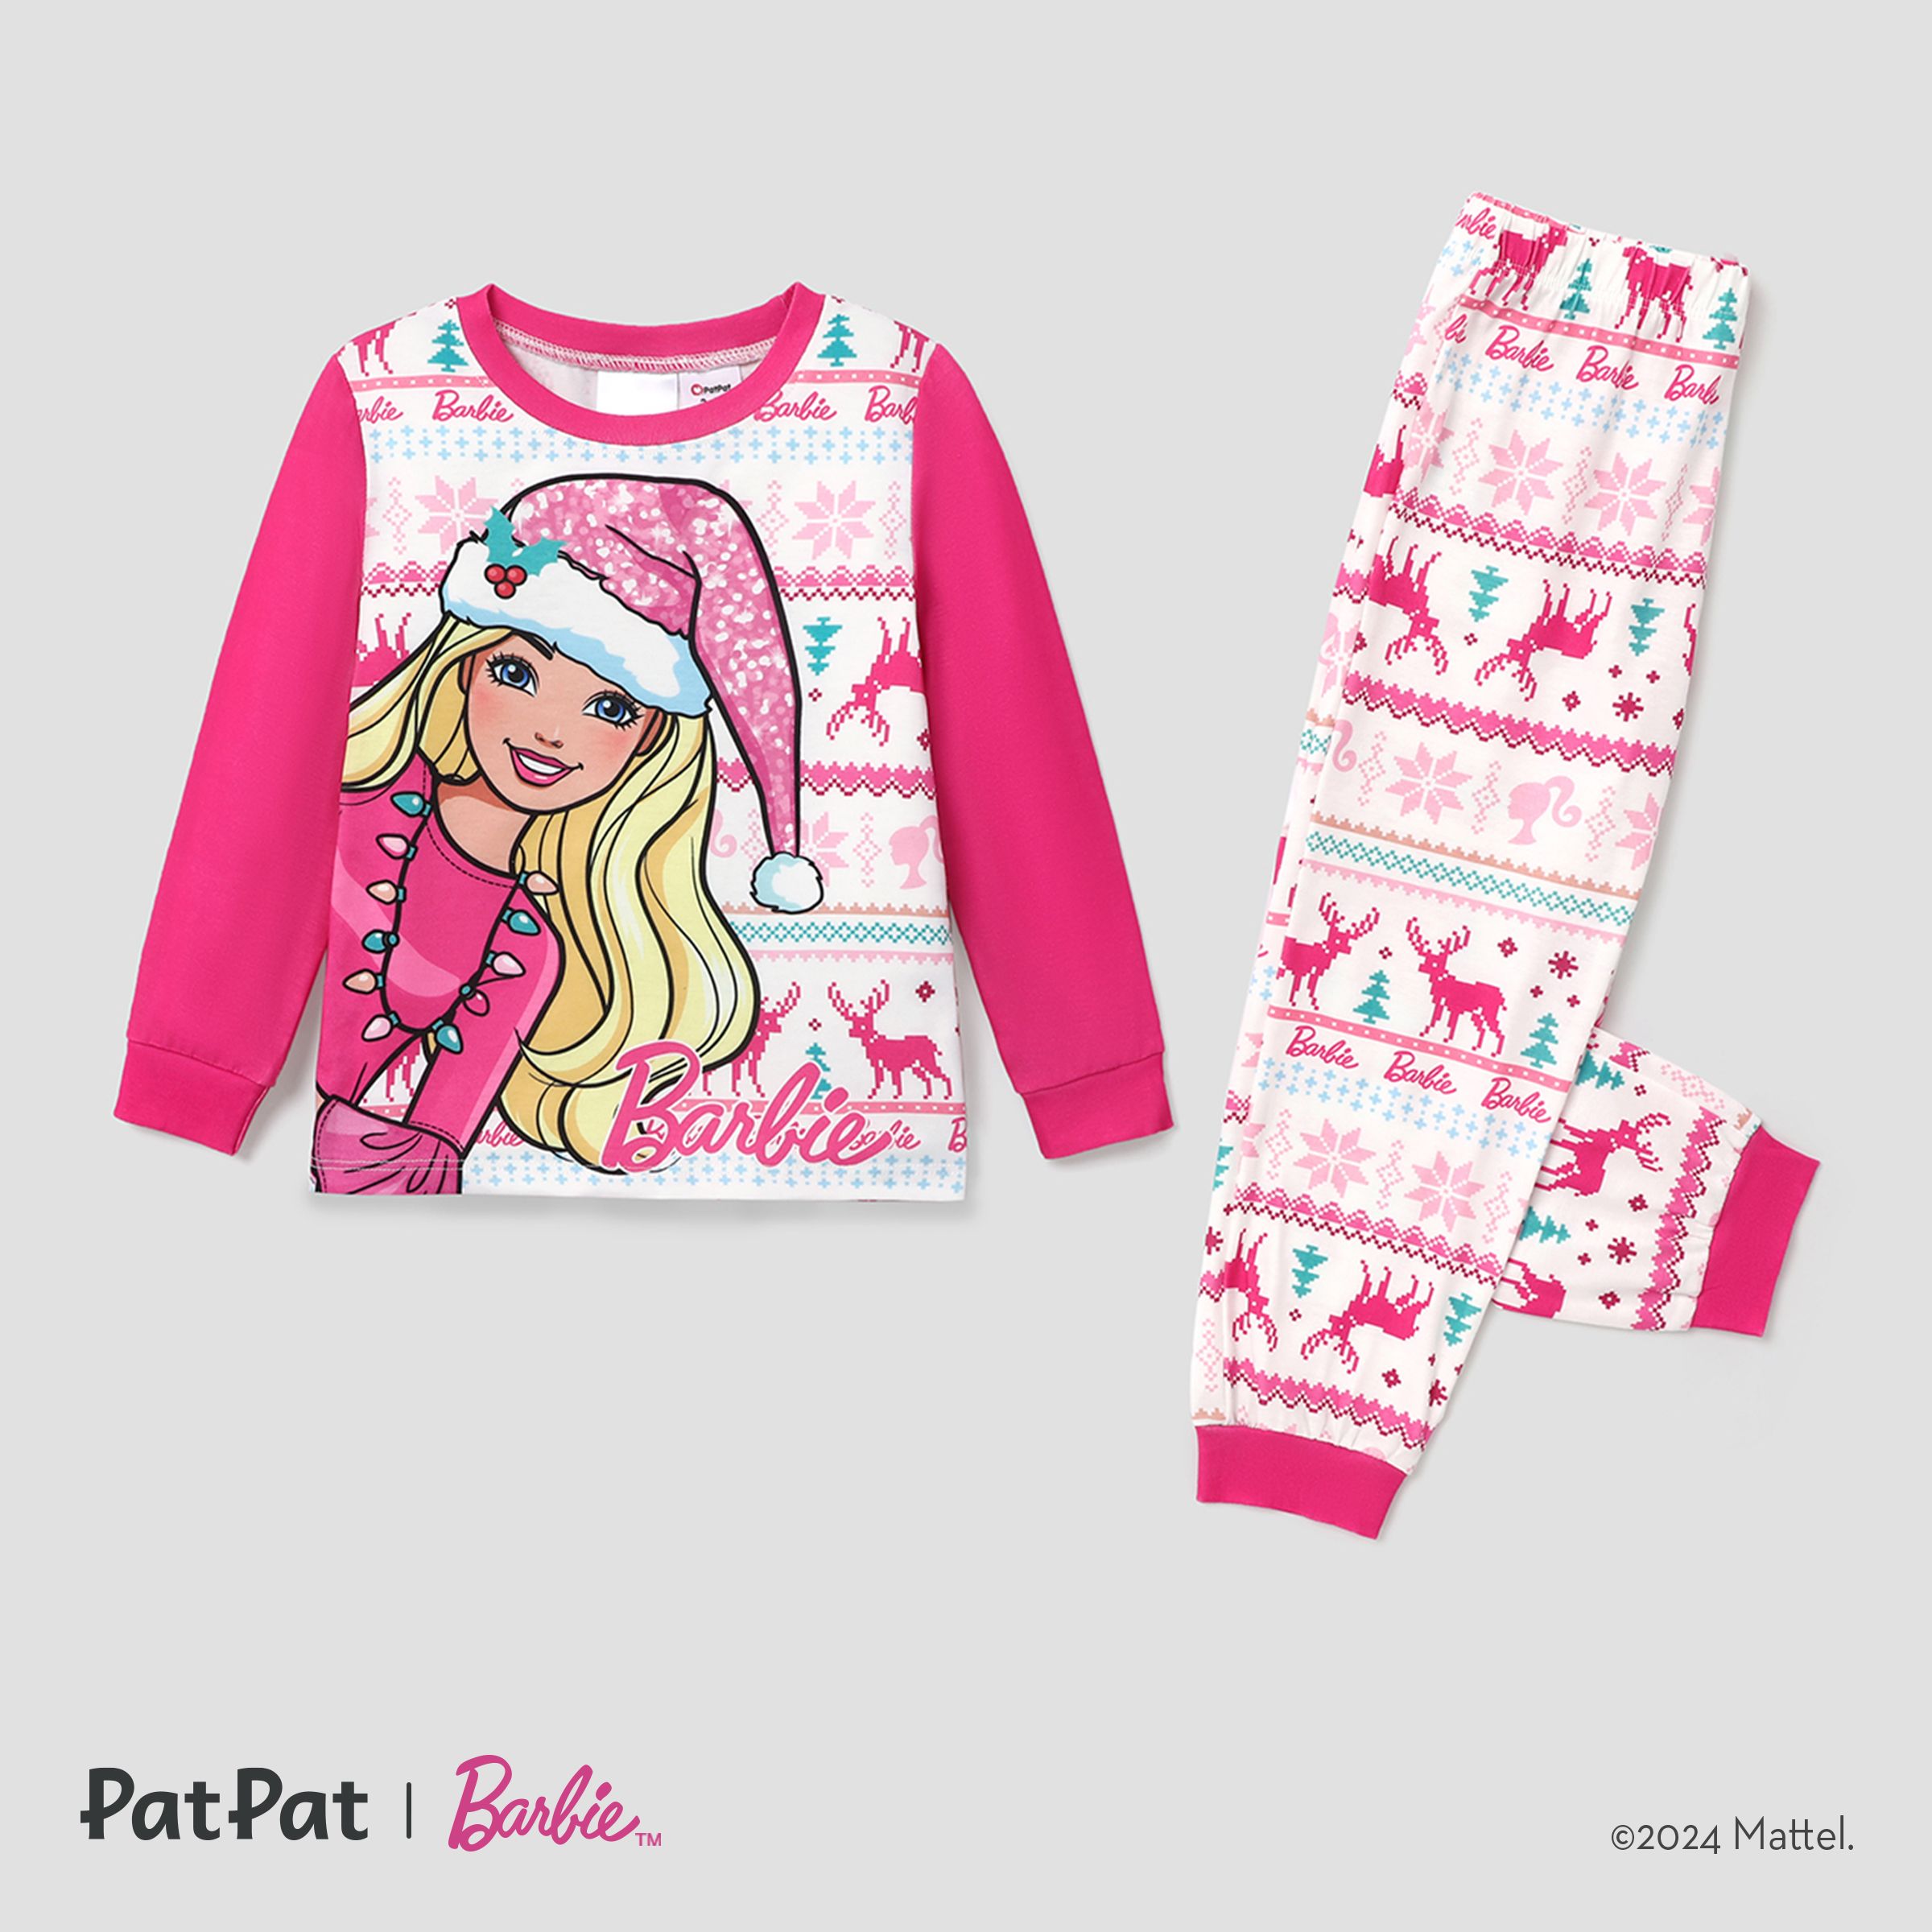 Barbie Noël Assorti Mommy And Me Snowflake Deer Pattern Home Wear Pyjamas Sets